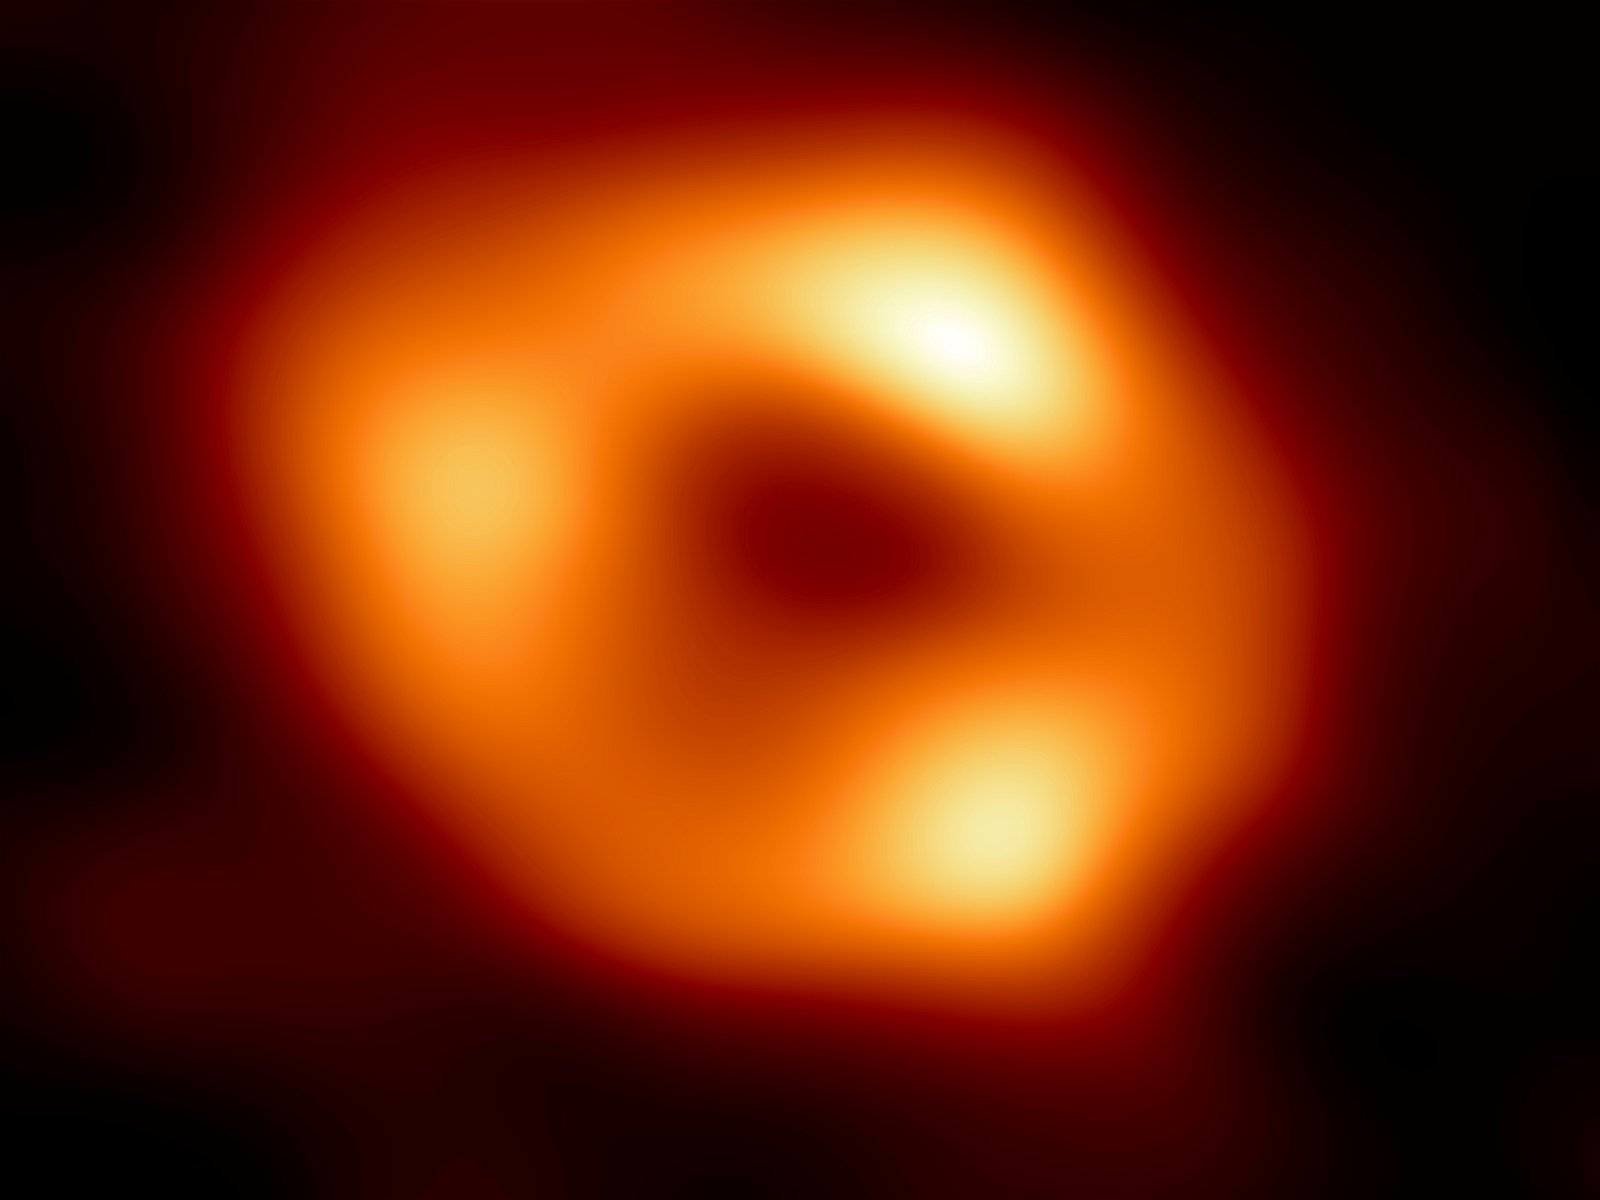 Sagitario A*, el agujero negro presente en nuestra galaxia